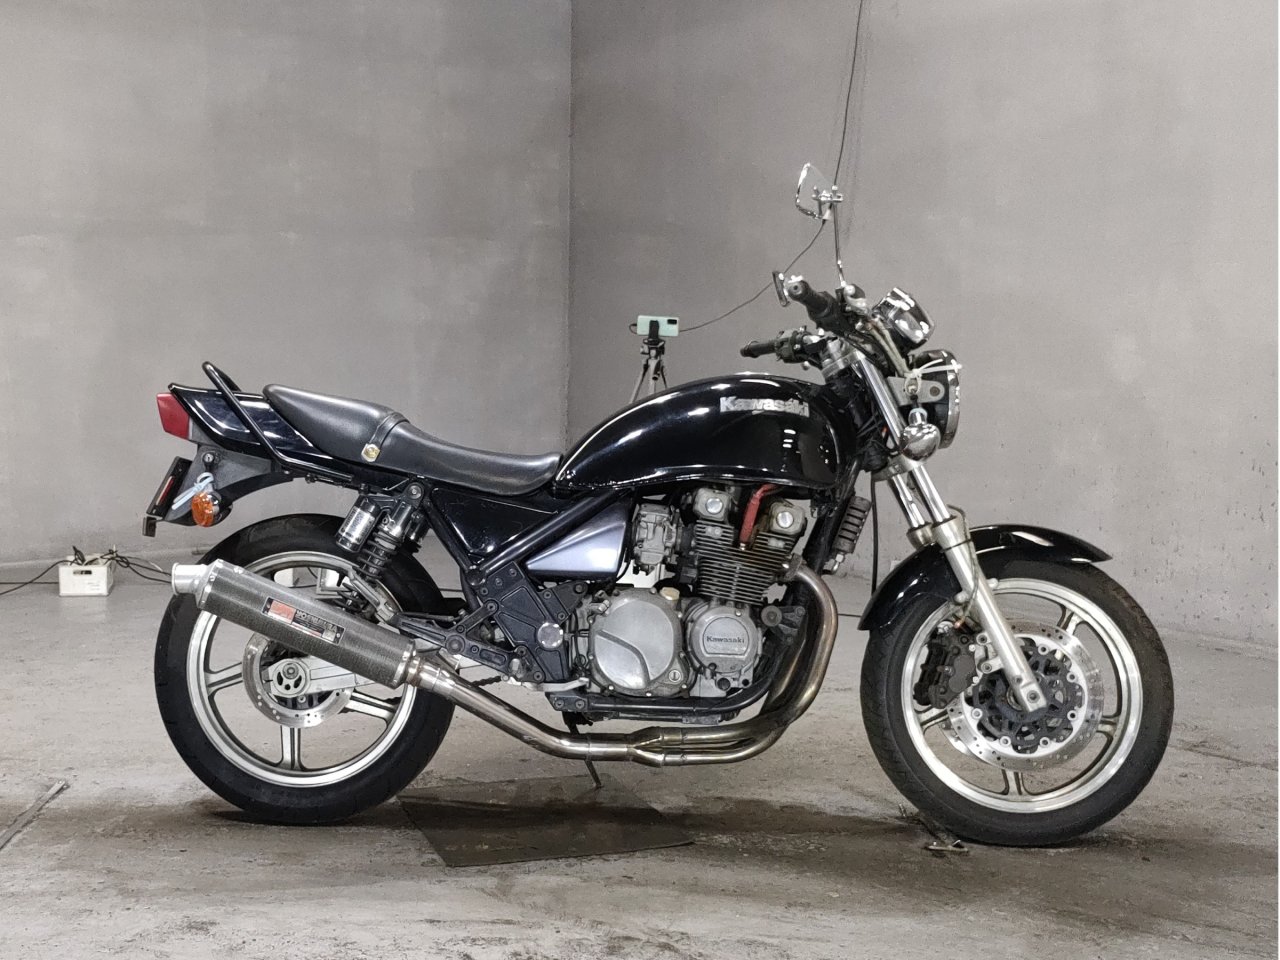 Kawasaki Zephyr 400 - Adamoto - Motorcycles from Japan